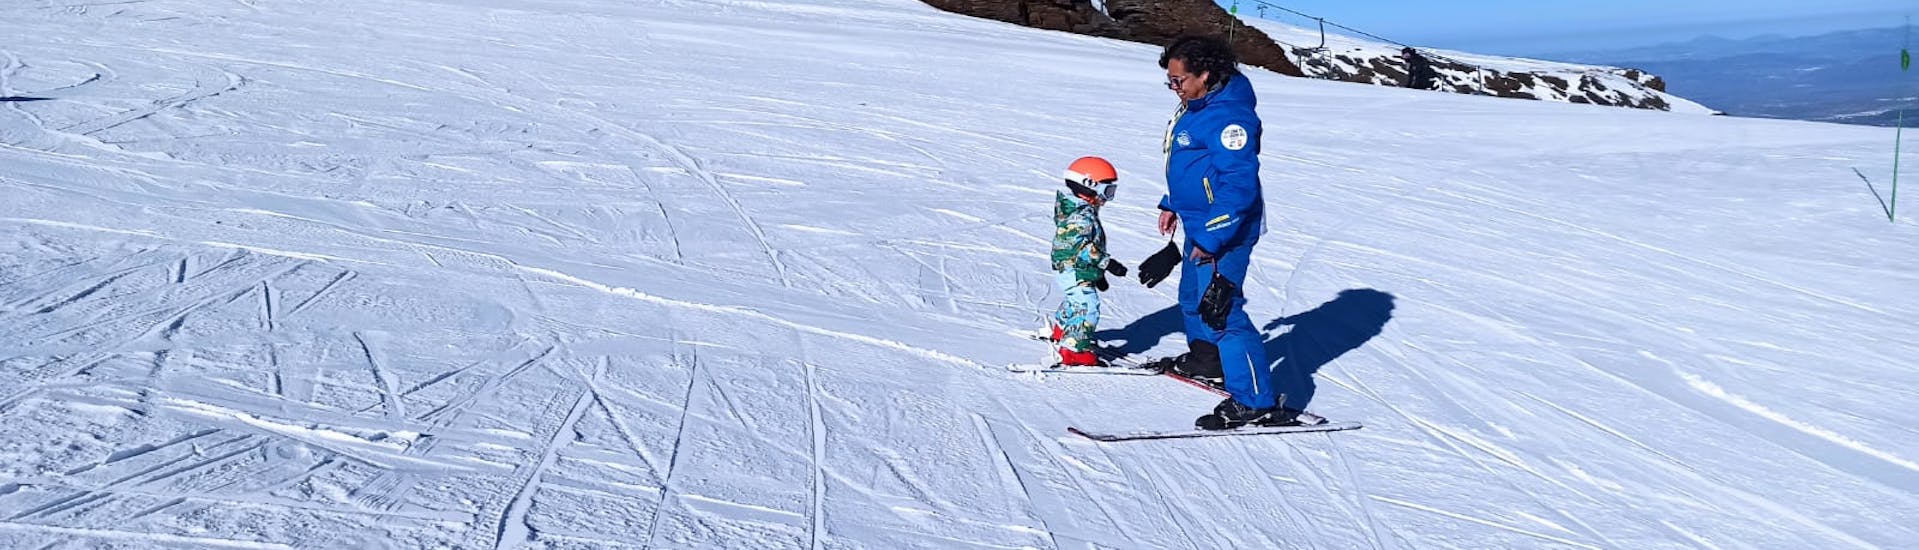 Lezioni private di sci per bambini (3-12 anni) di tutti i livelli.